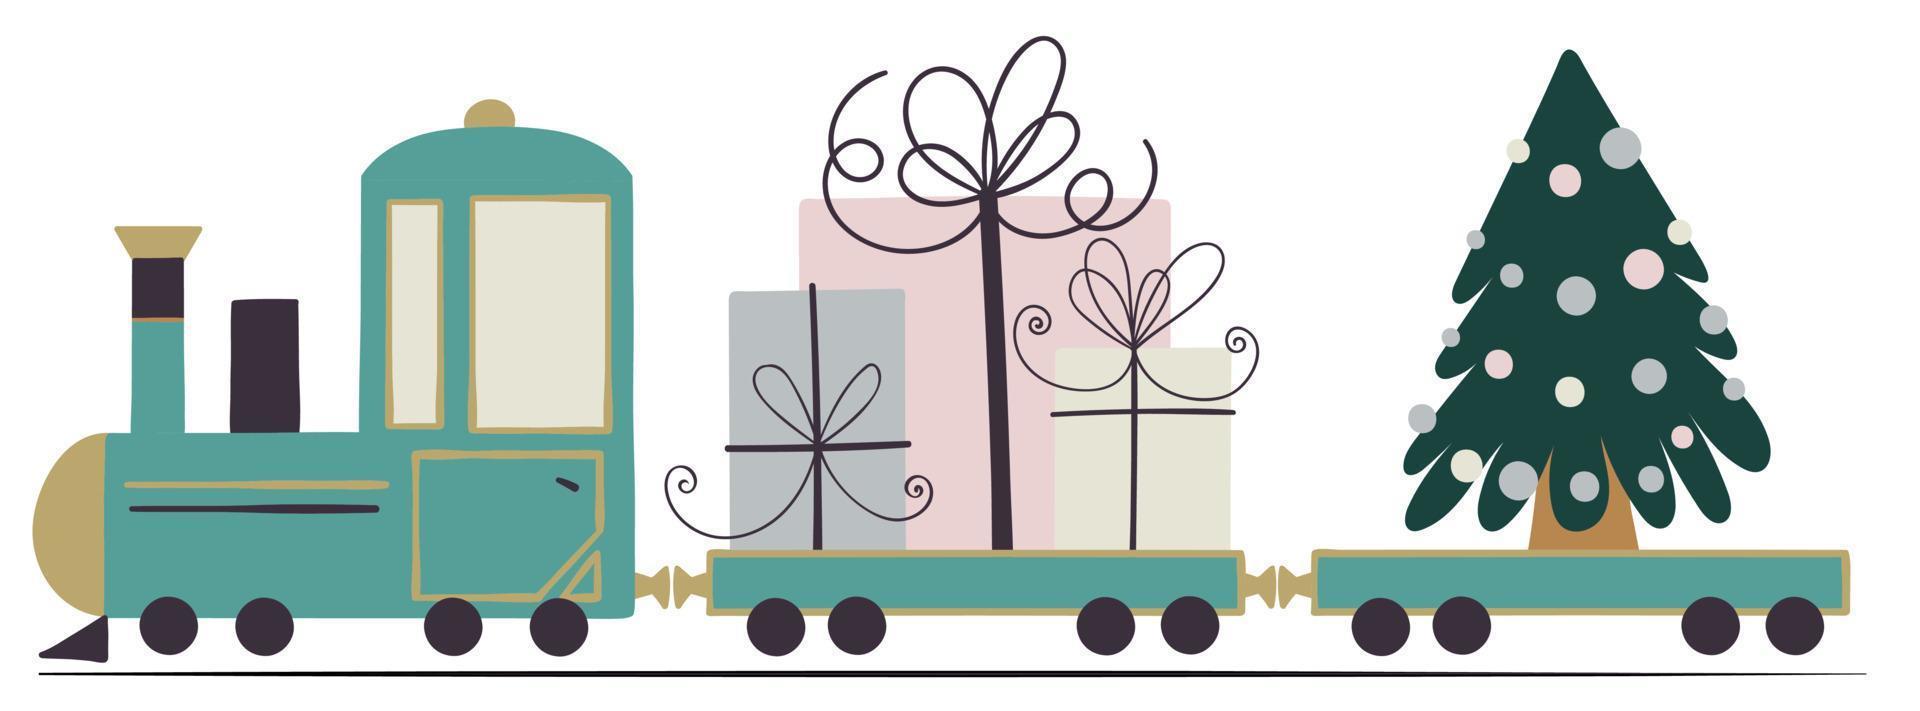 tren de juguete azul con lindas cajas de regalo y árbol de navidad con decoración. vector